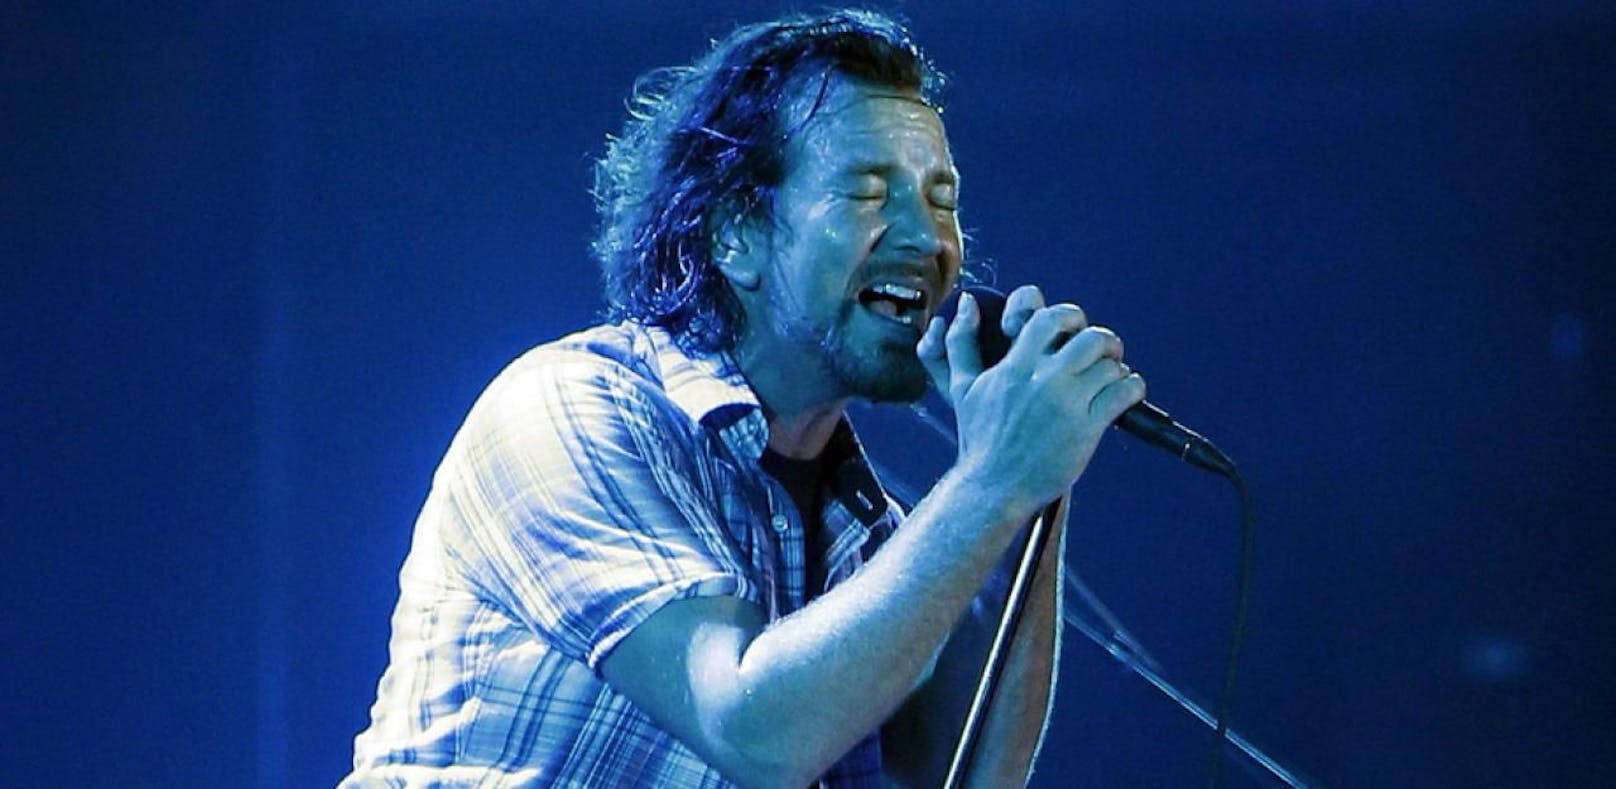 Stimme weg - Pearl Jam mussten Konzert absagen